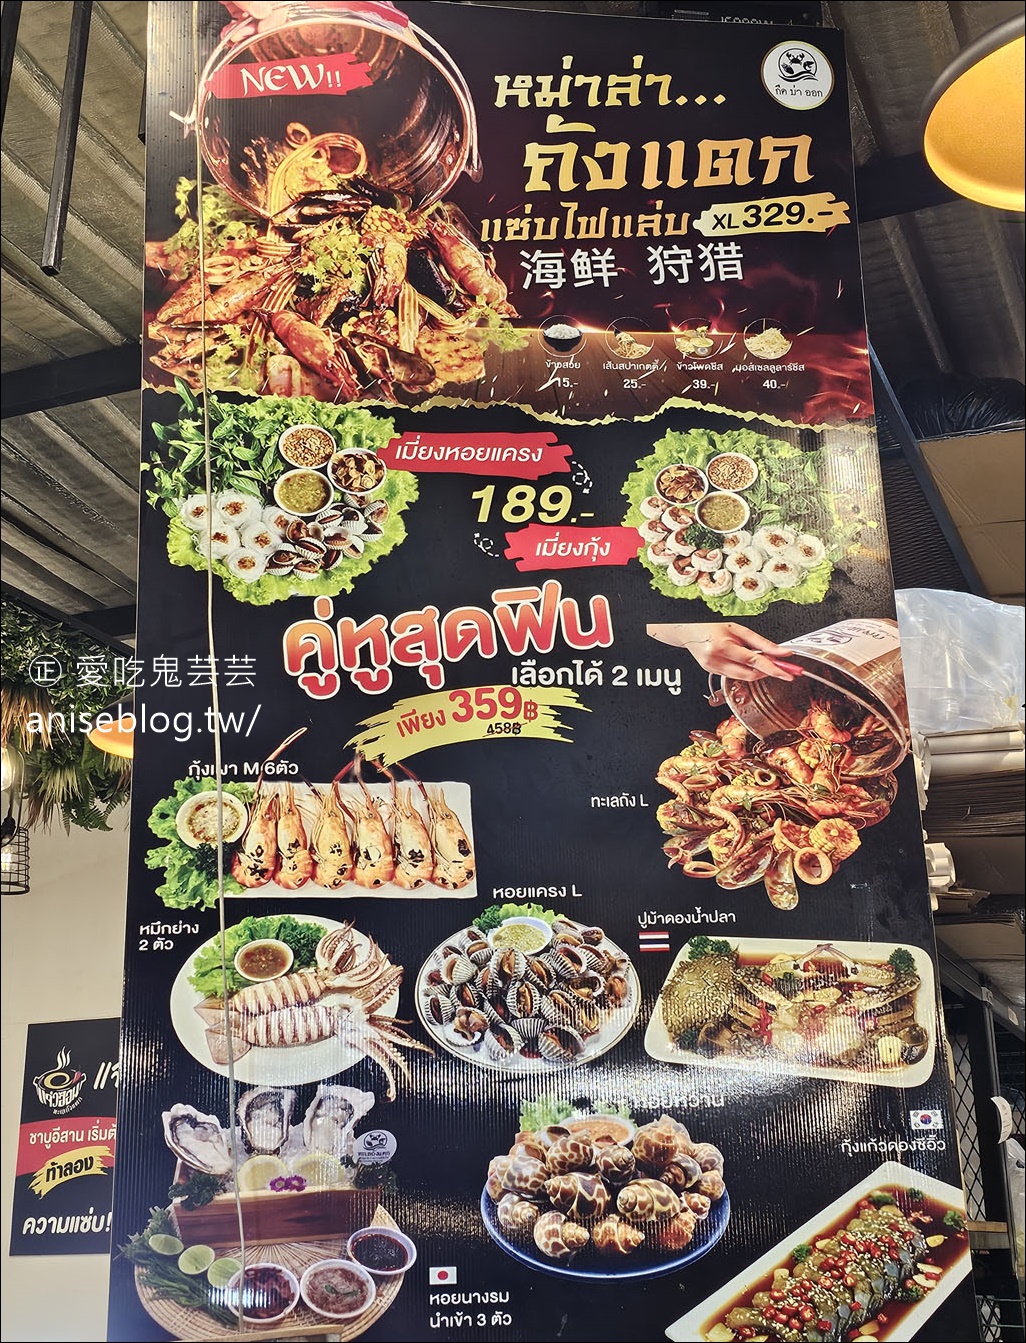 清邁夜市 กาดมณี Kadmanee Market Chiangmai ，脆皮燒肉也太好吃了吧！